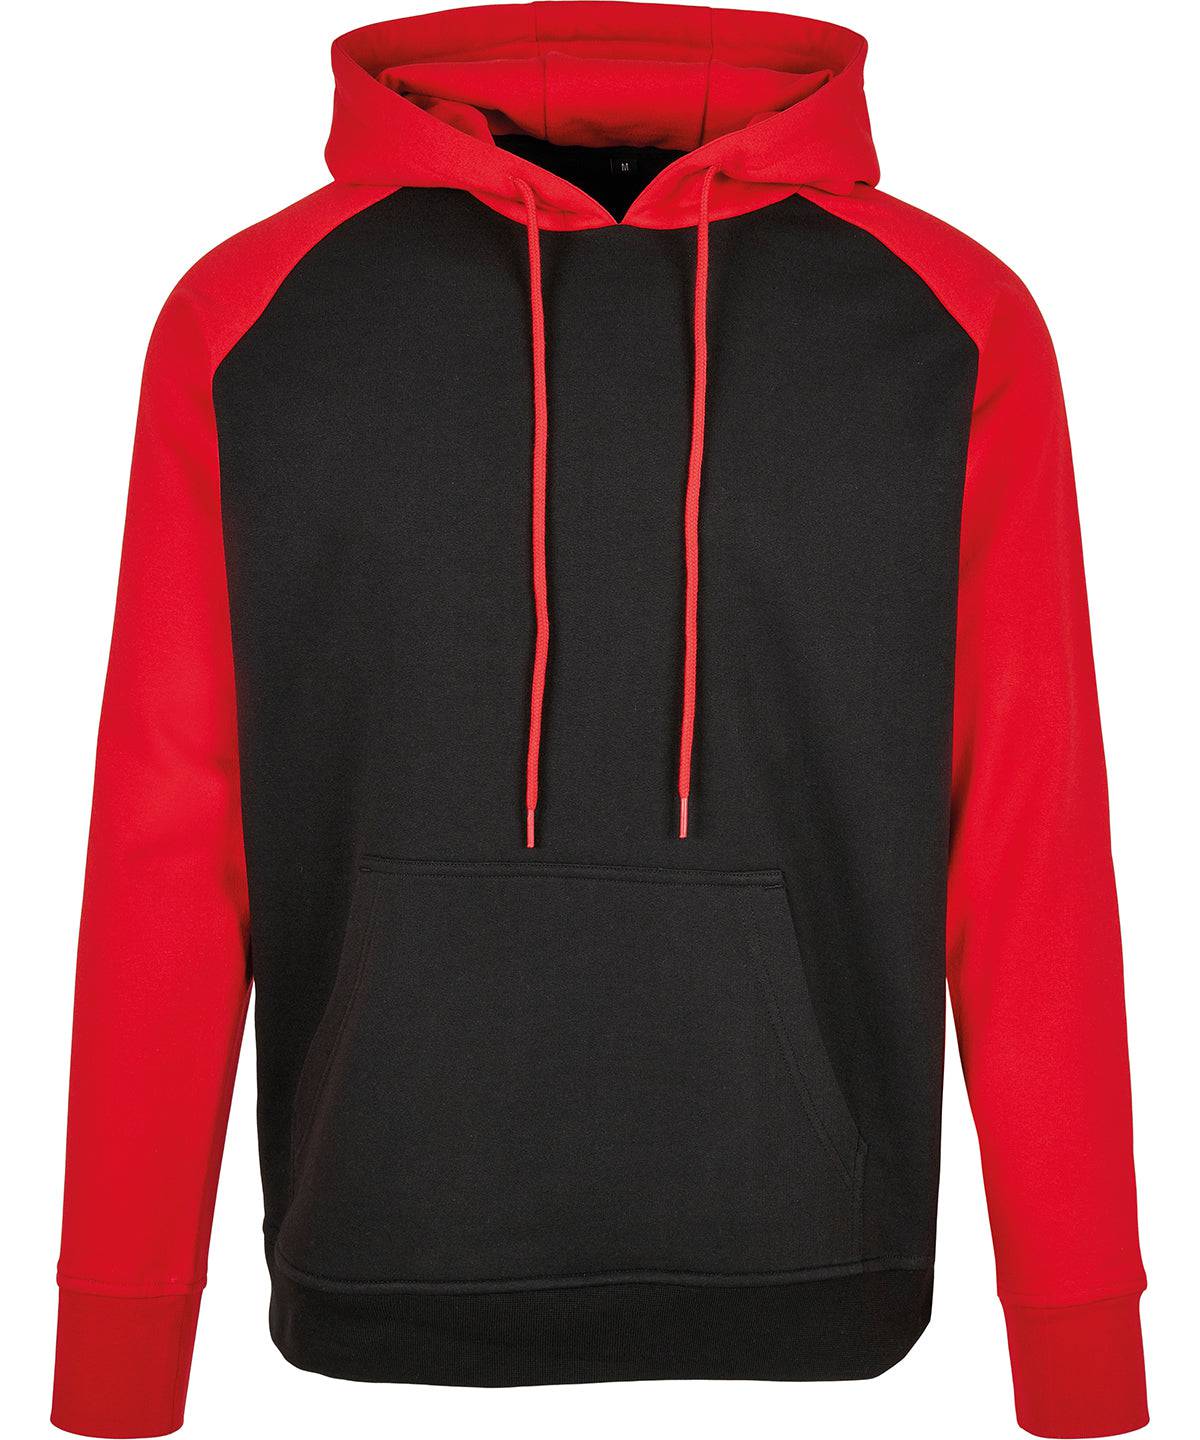 Black/Red - Basic raglan hoodie